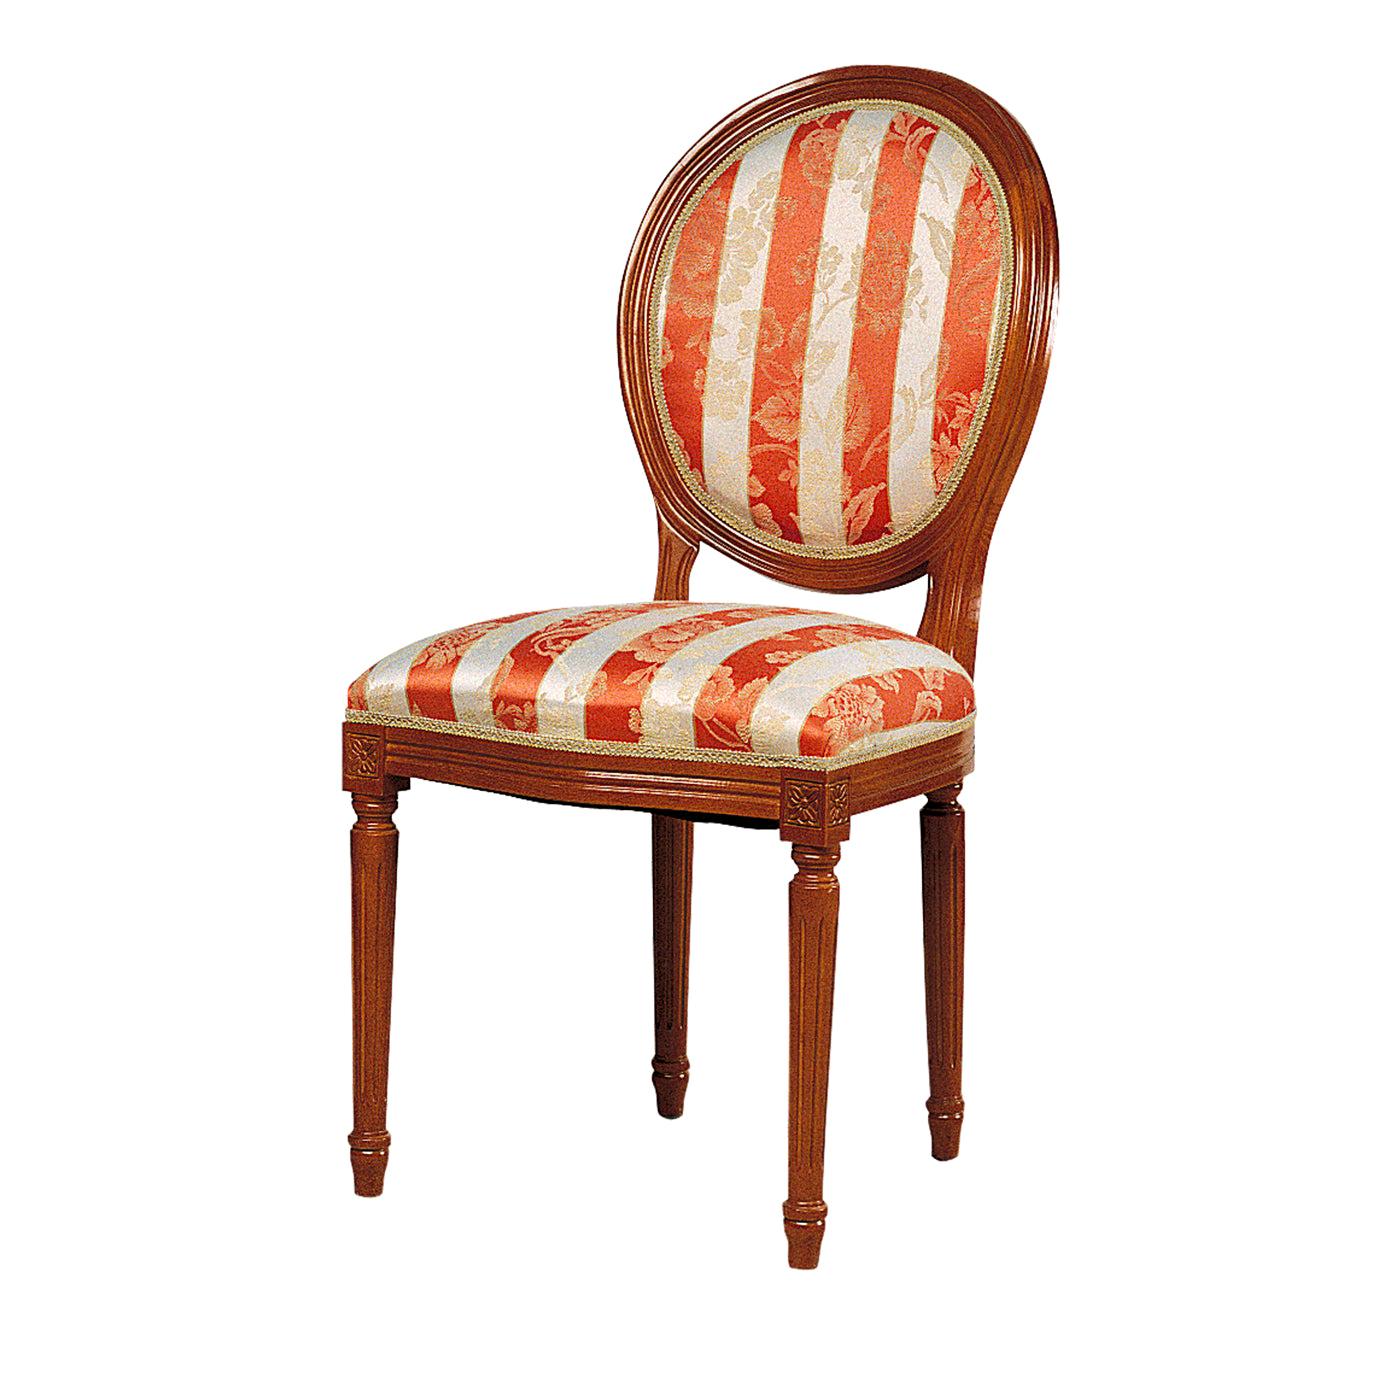 Capotavola Striped Chair